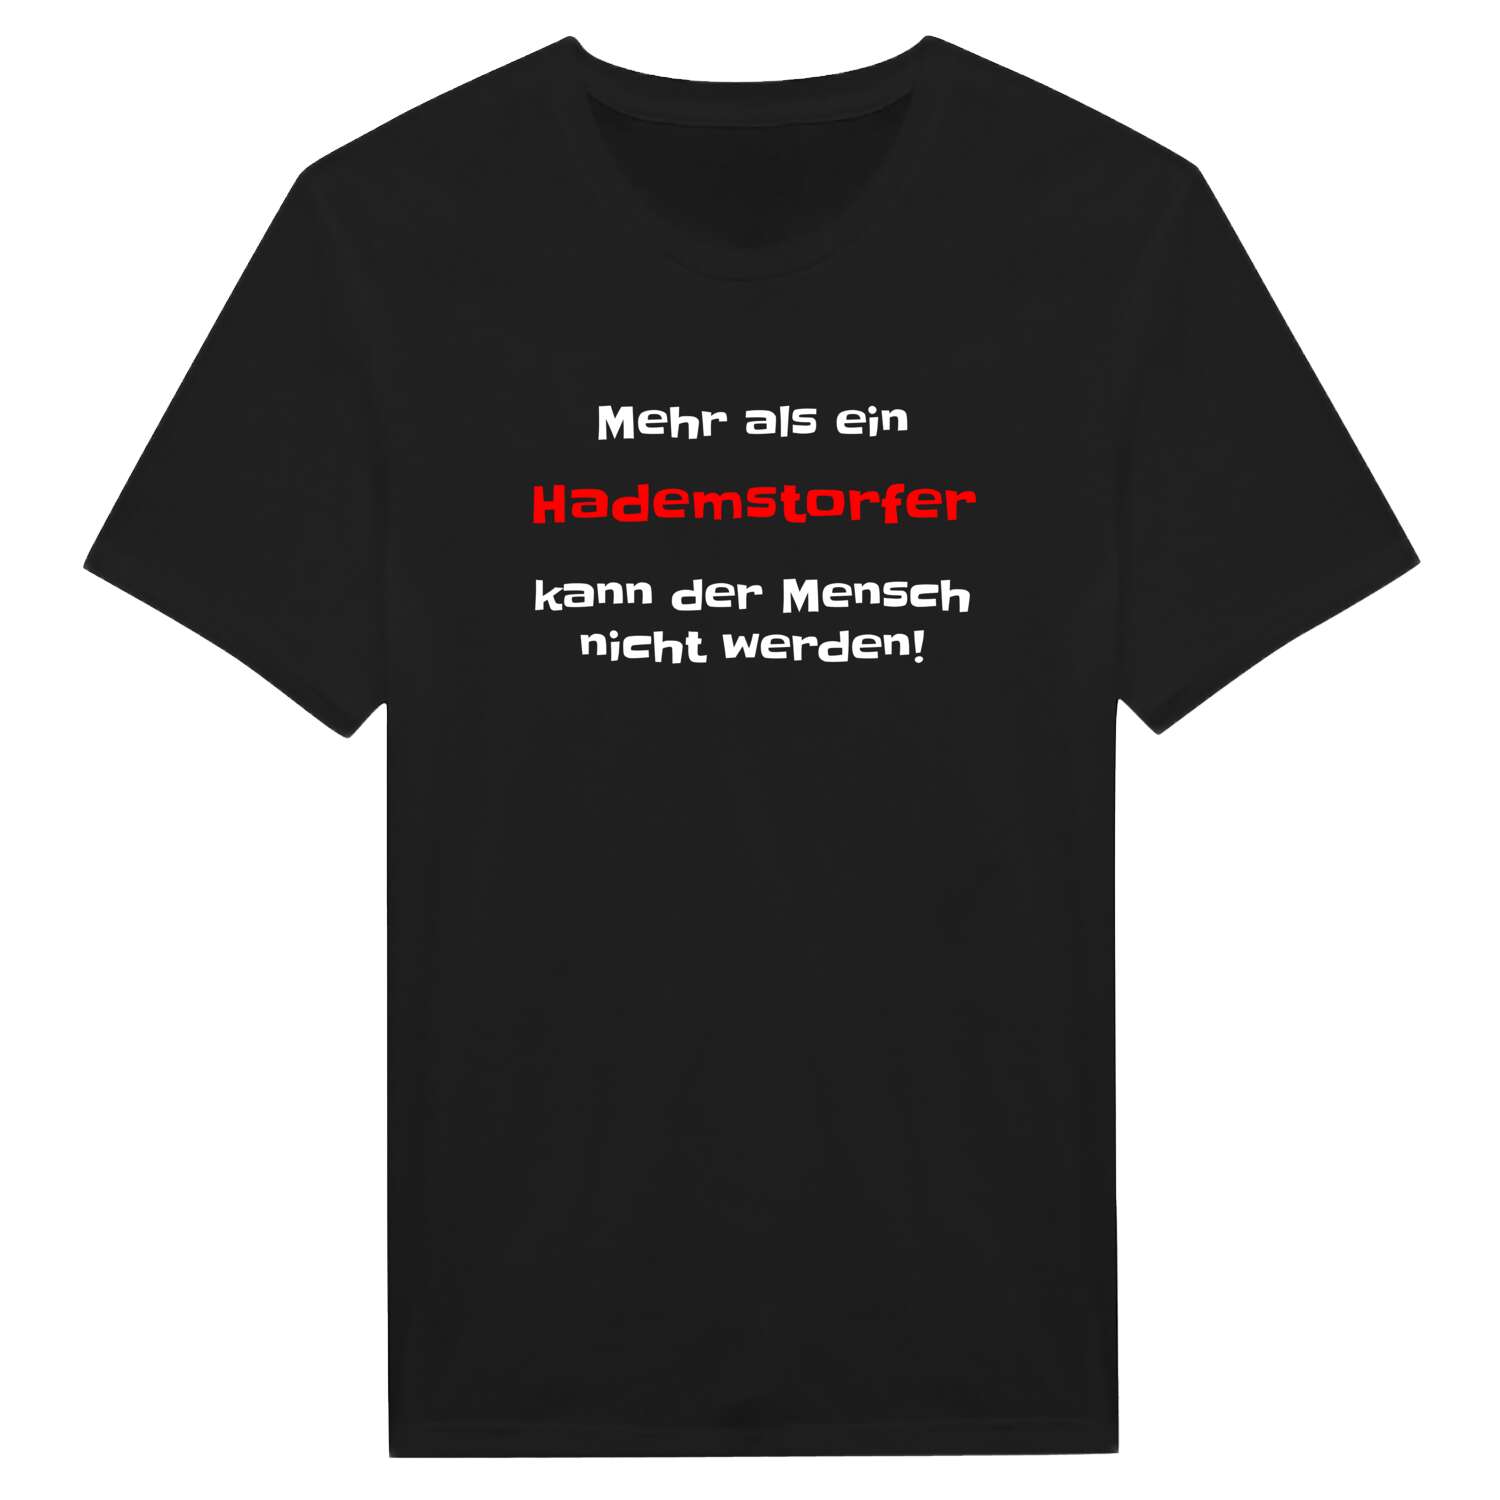 Hademstorf T-Shirt »Mehr als ein«